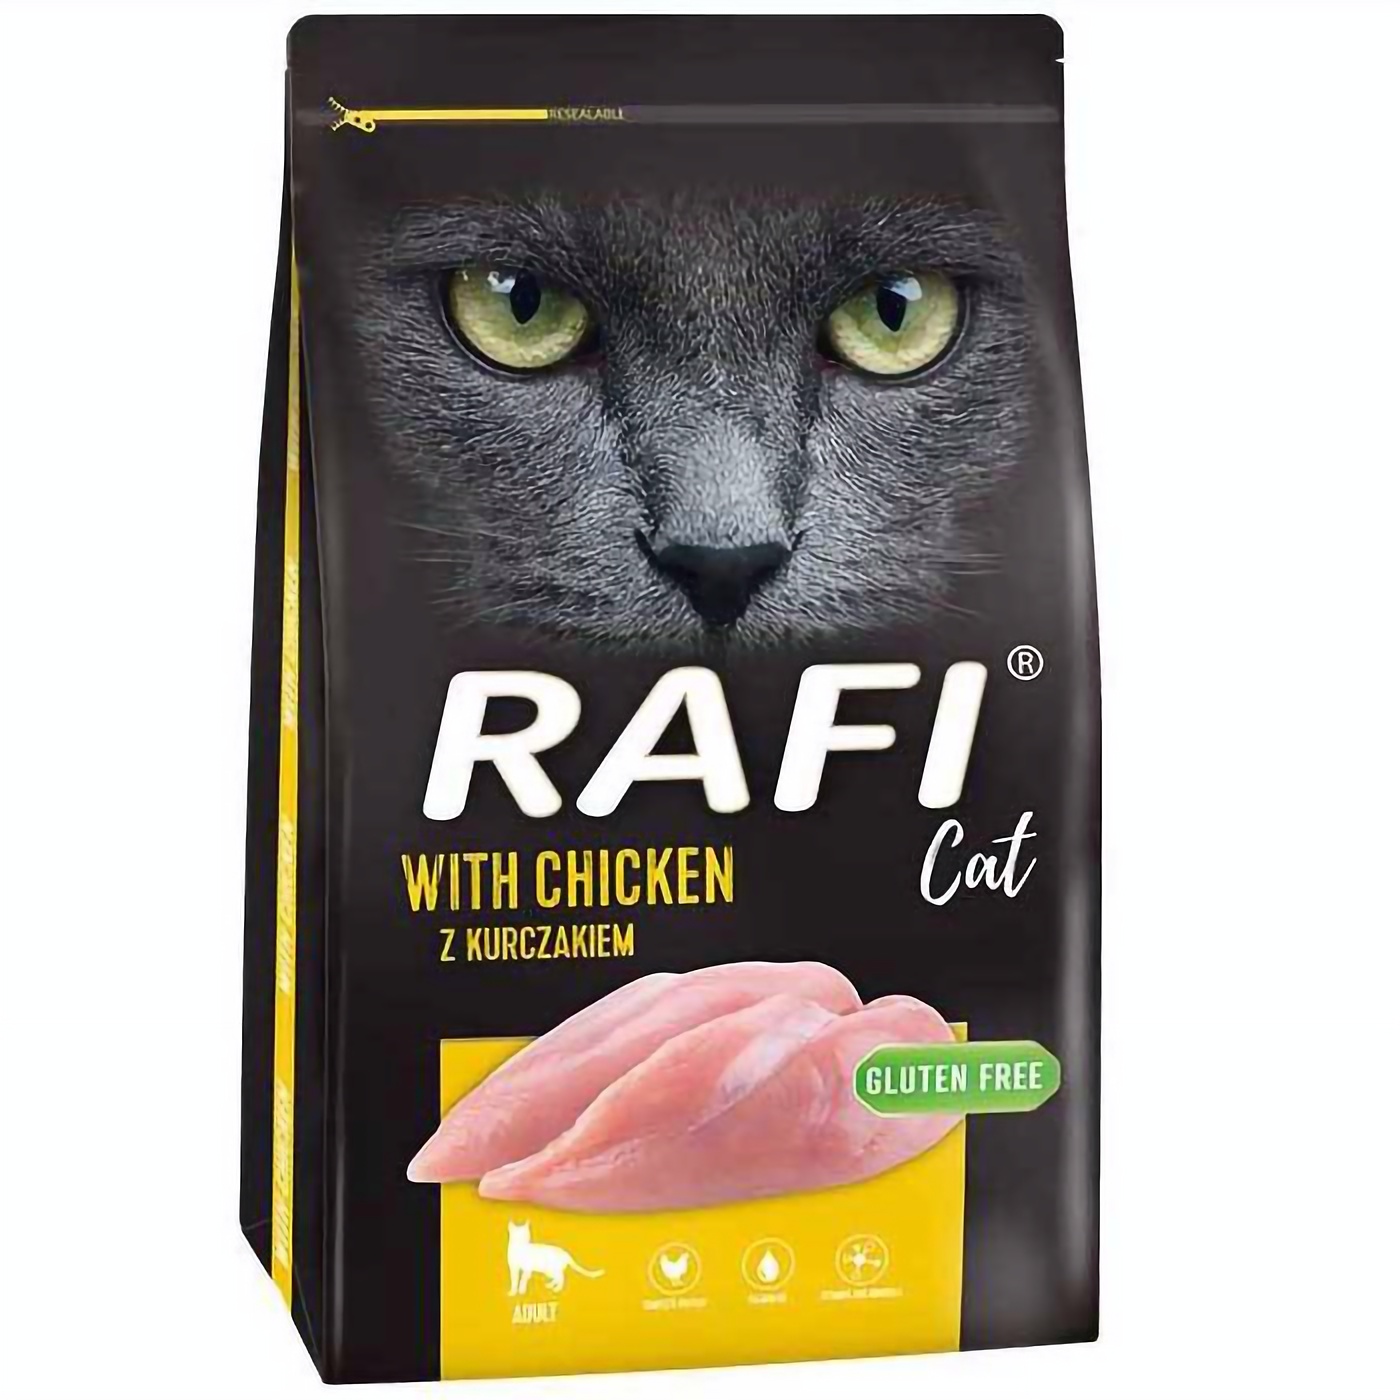 Сухой корм для взрослых котов Dolina Noteci Rafi Cat с курицей 7 кг - фото 1